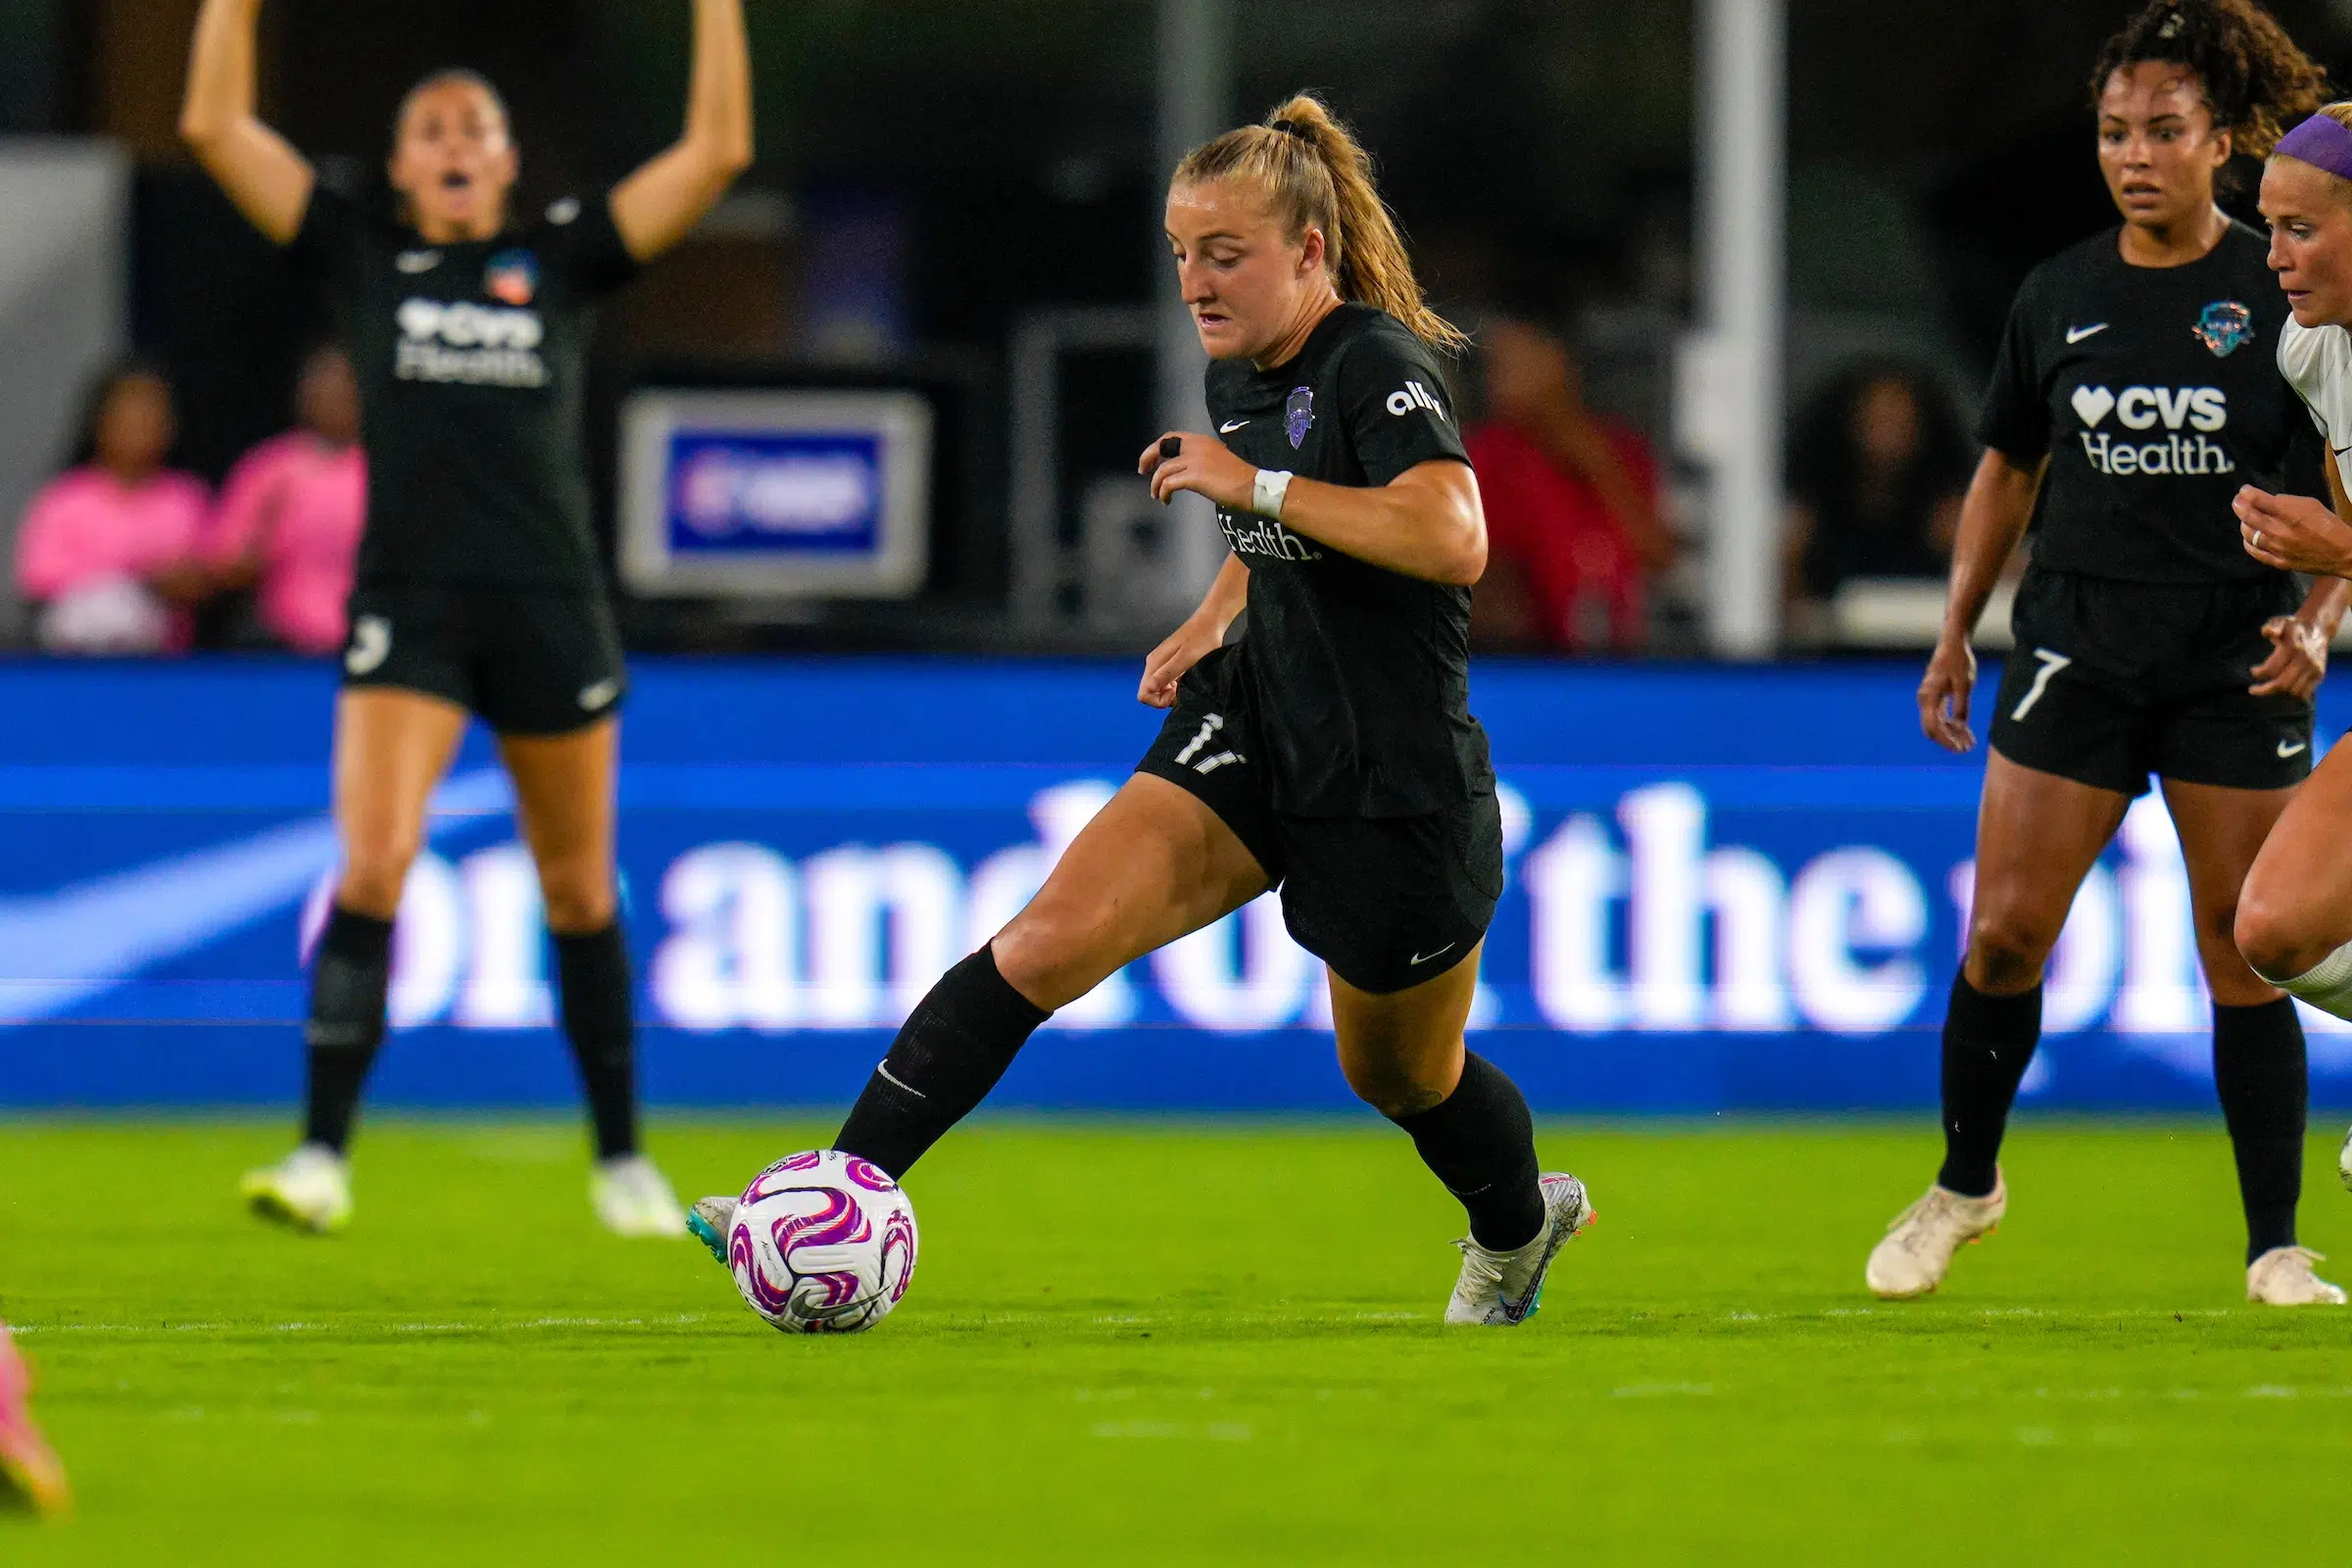 Nicole Douglas in a black uniform dribbles a soccer ball on a green field.